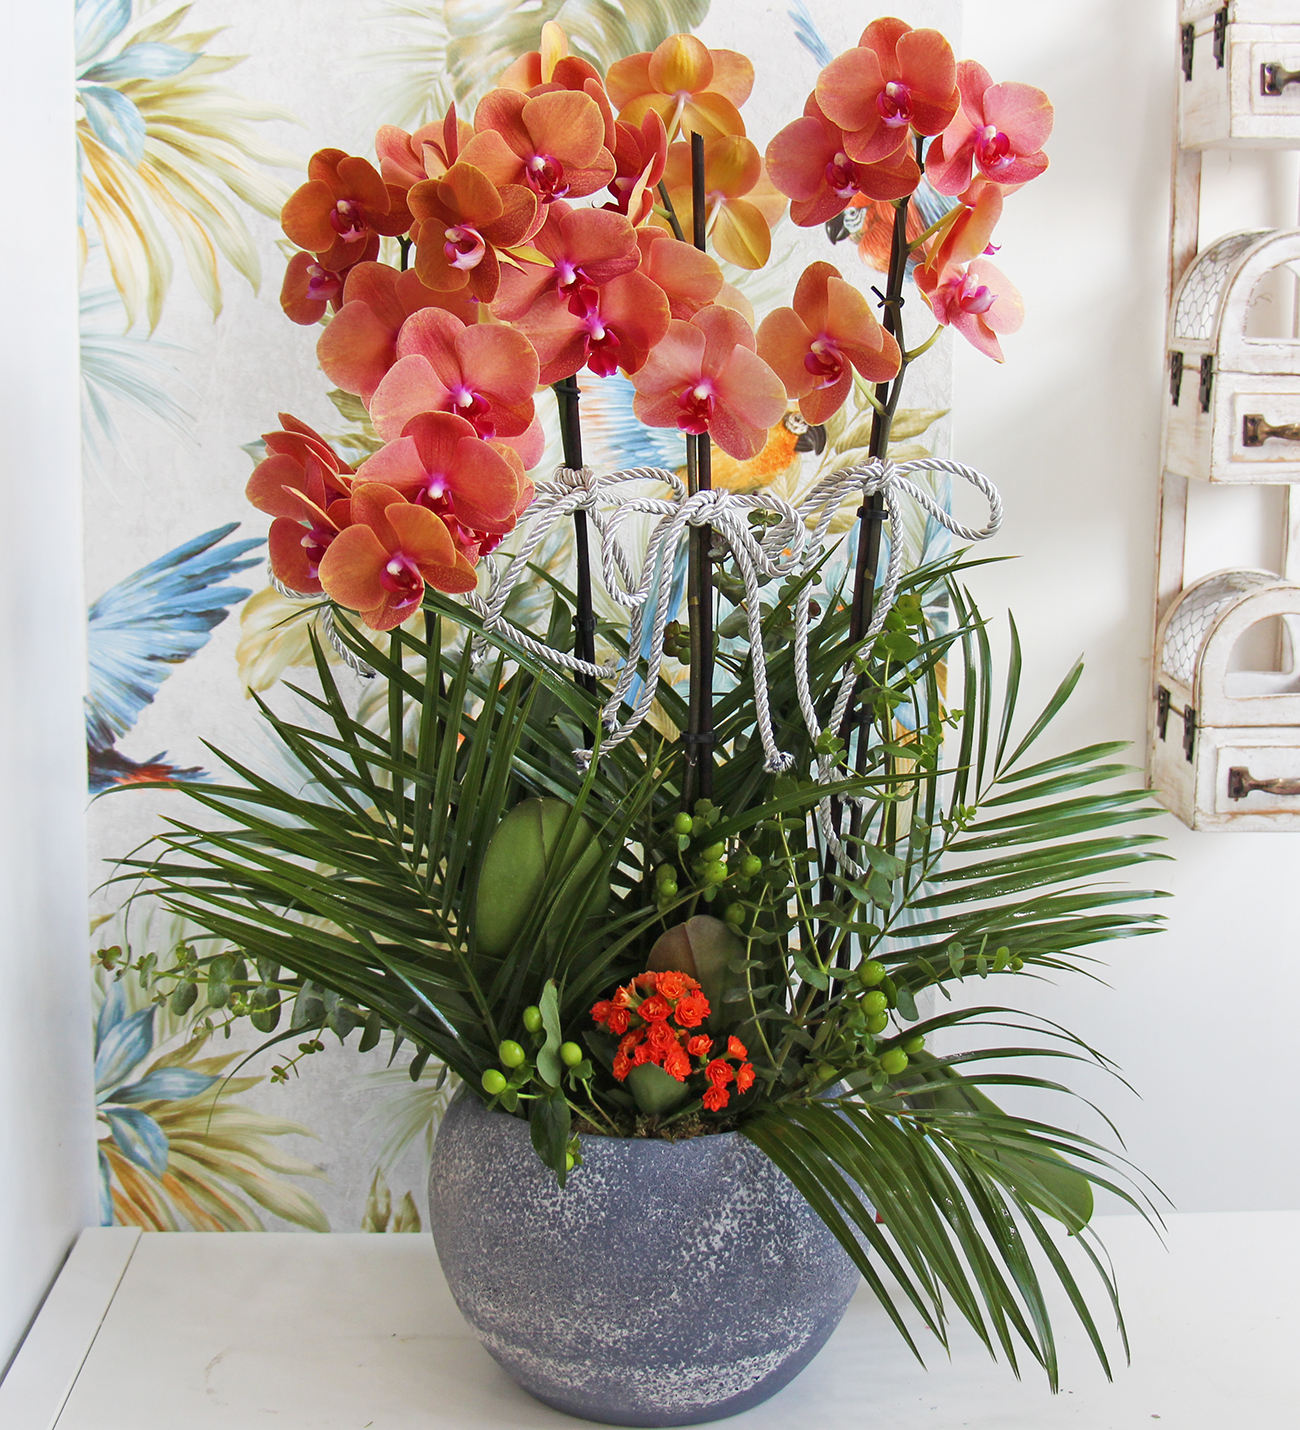 Klasik seri seramik vazo da 4 dallı ateş rengi orkide tasarımı